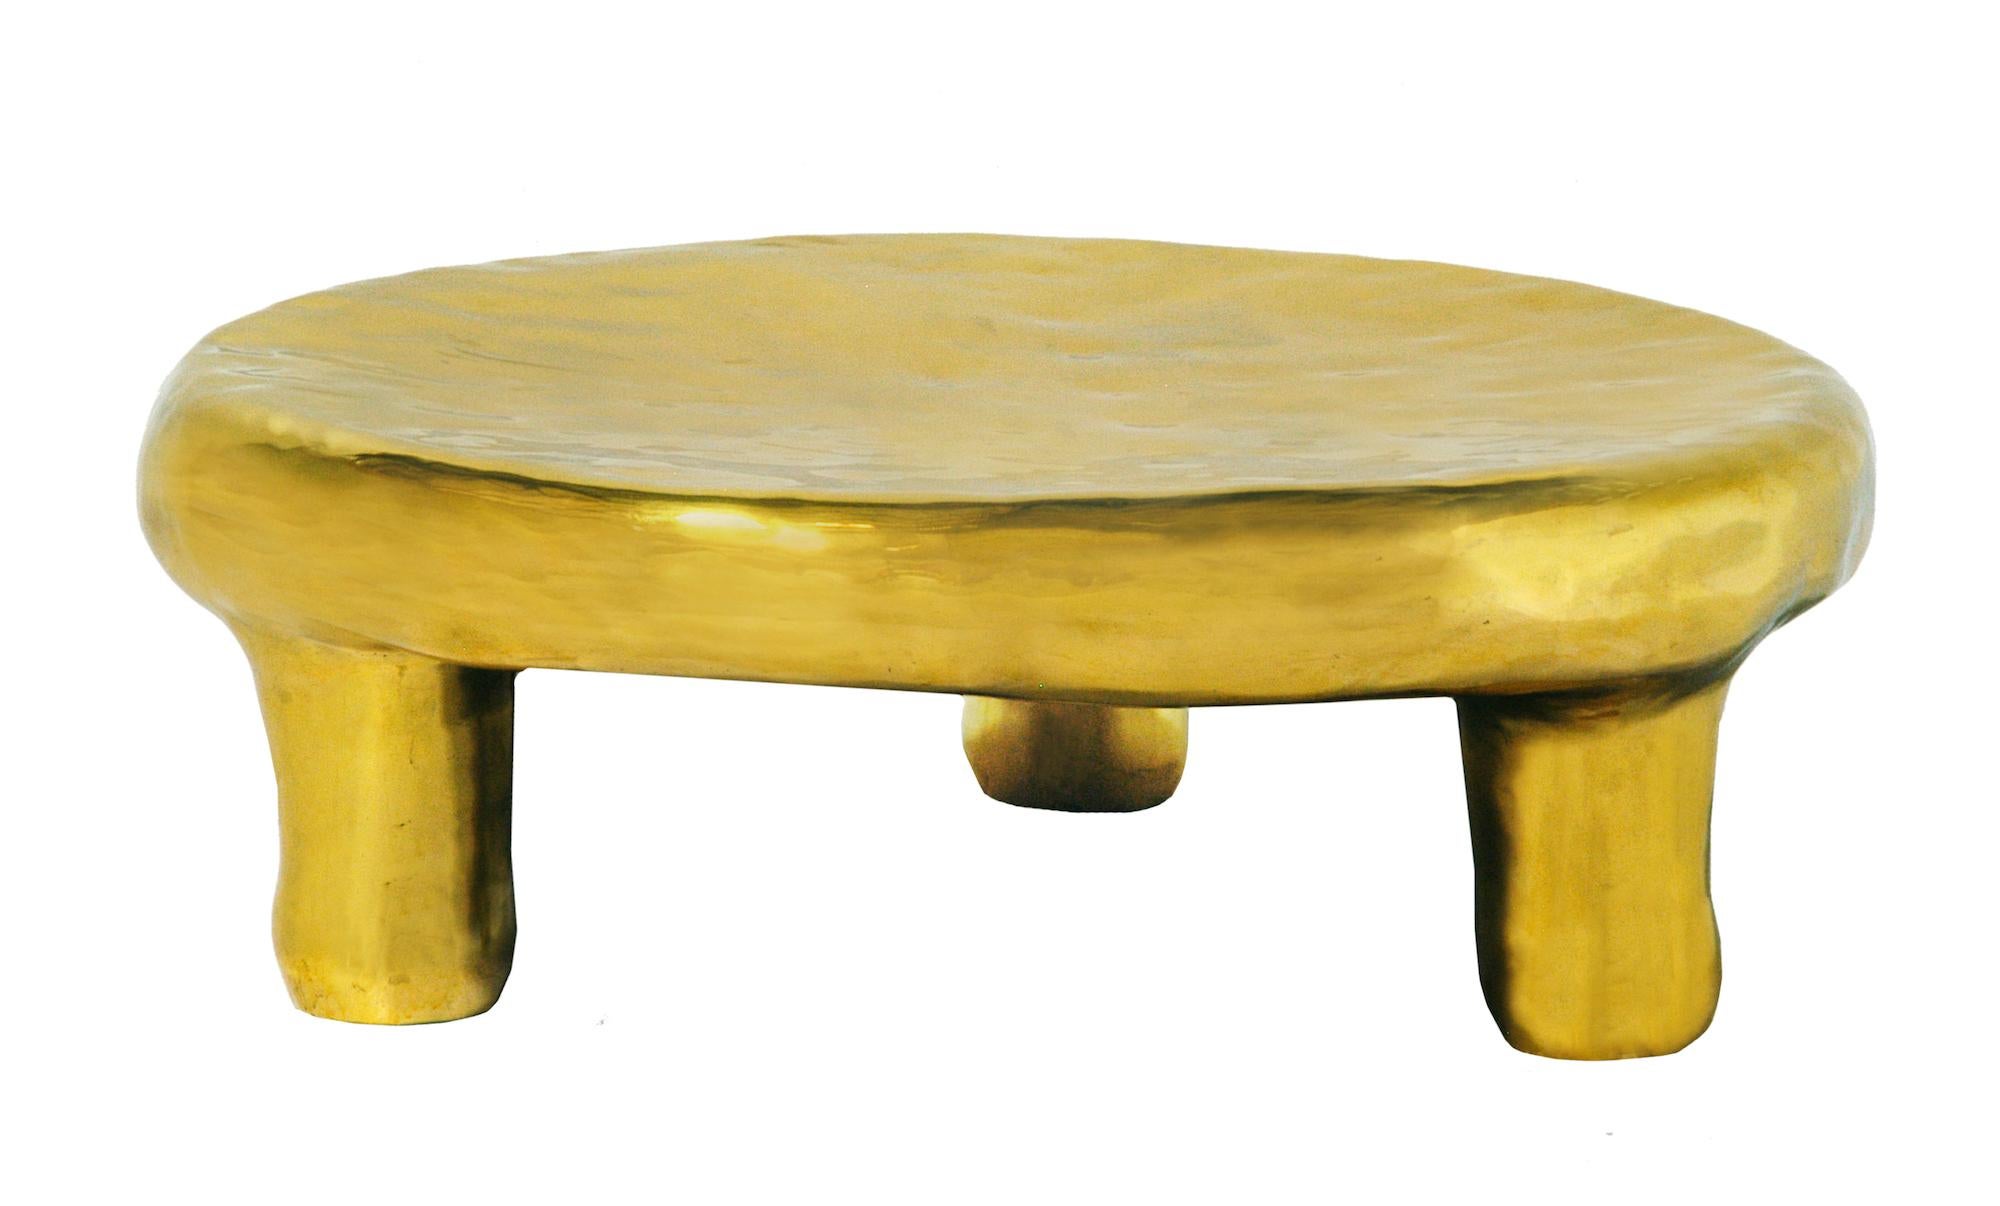 La table basse Delight en laiton de Scarlet Splendour est une table basse ronde, superbe dans tout espace intérieur. 

La collection Fools' Gold de formes amorphes, moulées en laiton, est un hommage à l'héritage de l'artisanat indien du métal.